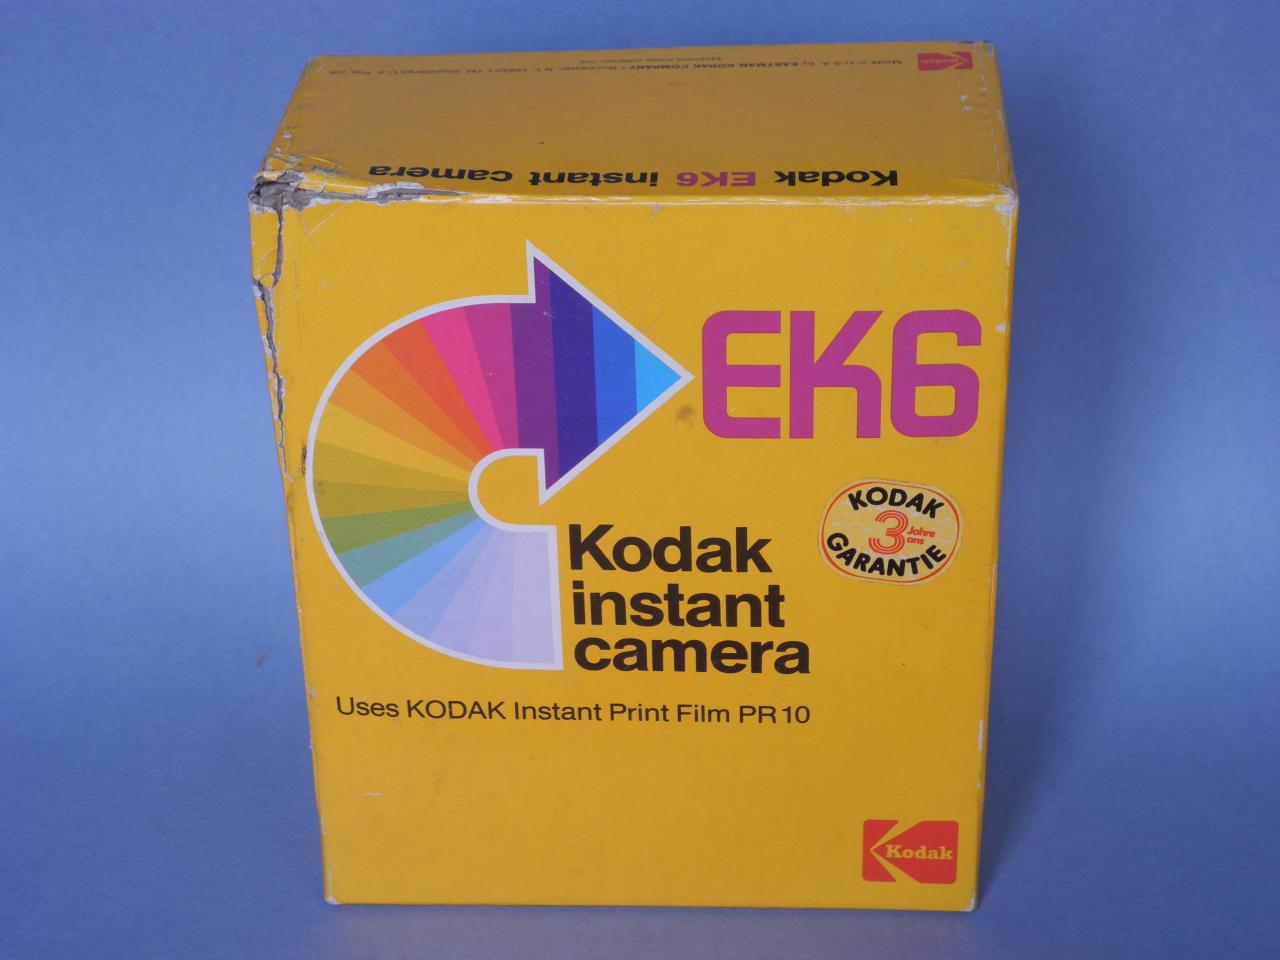 *Boite instant EK6 Kodak*